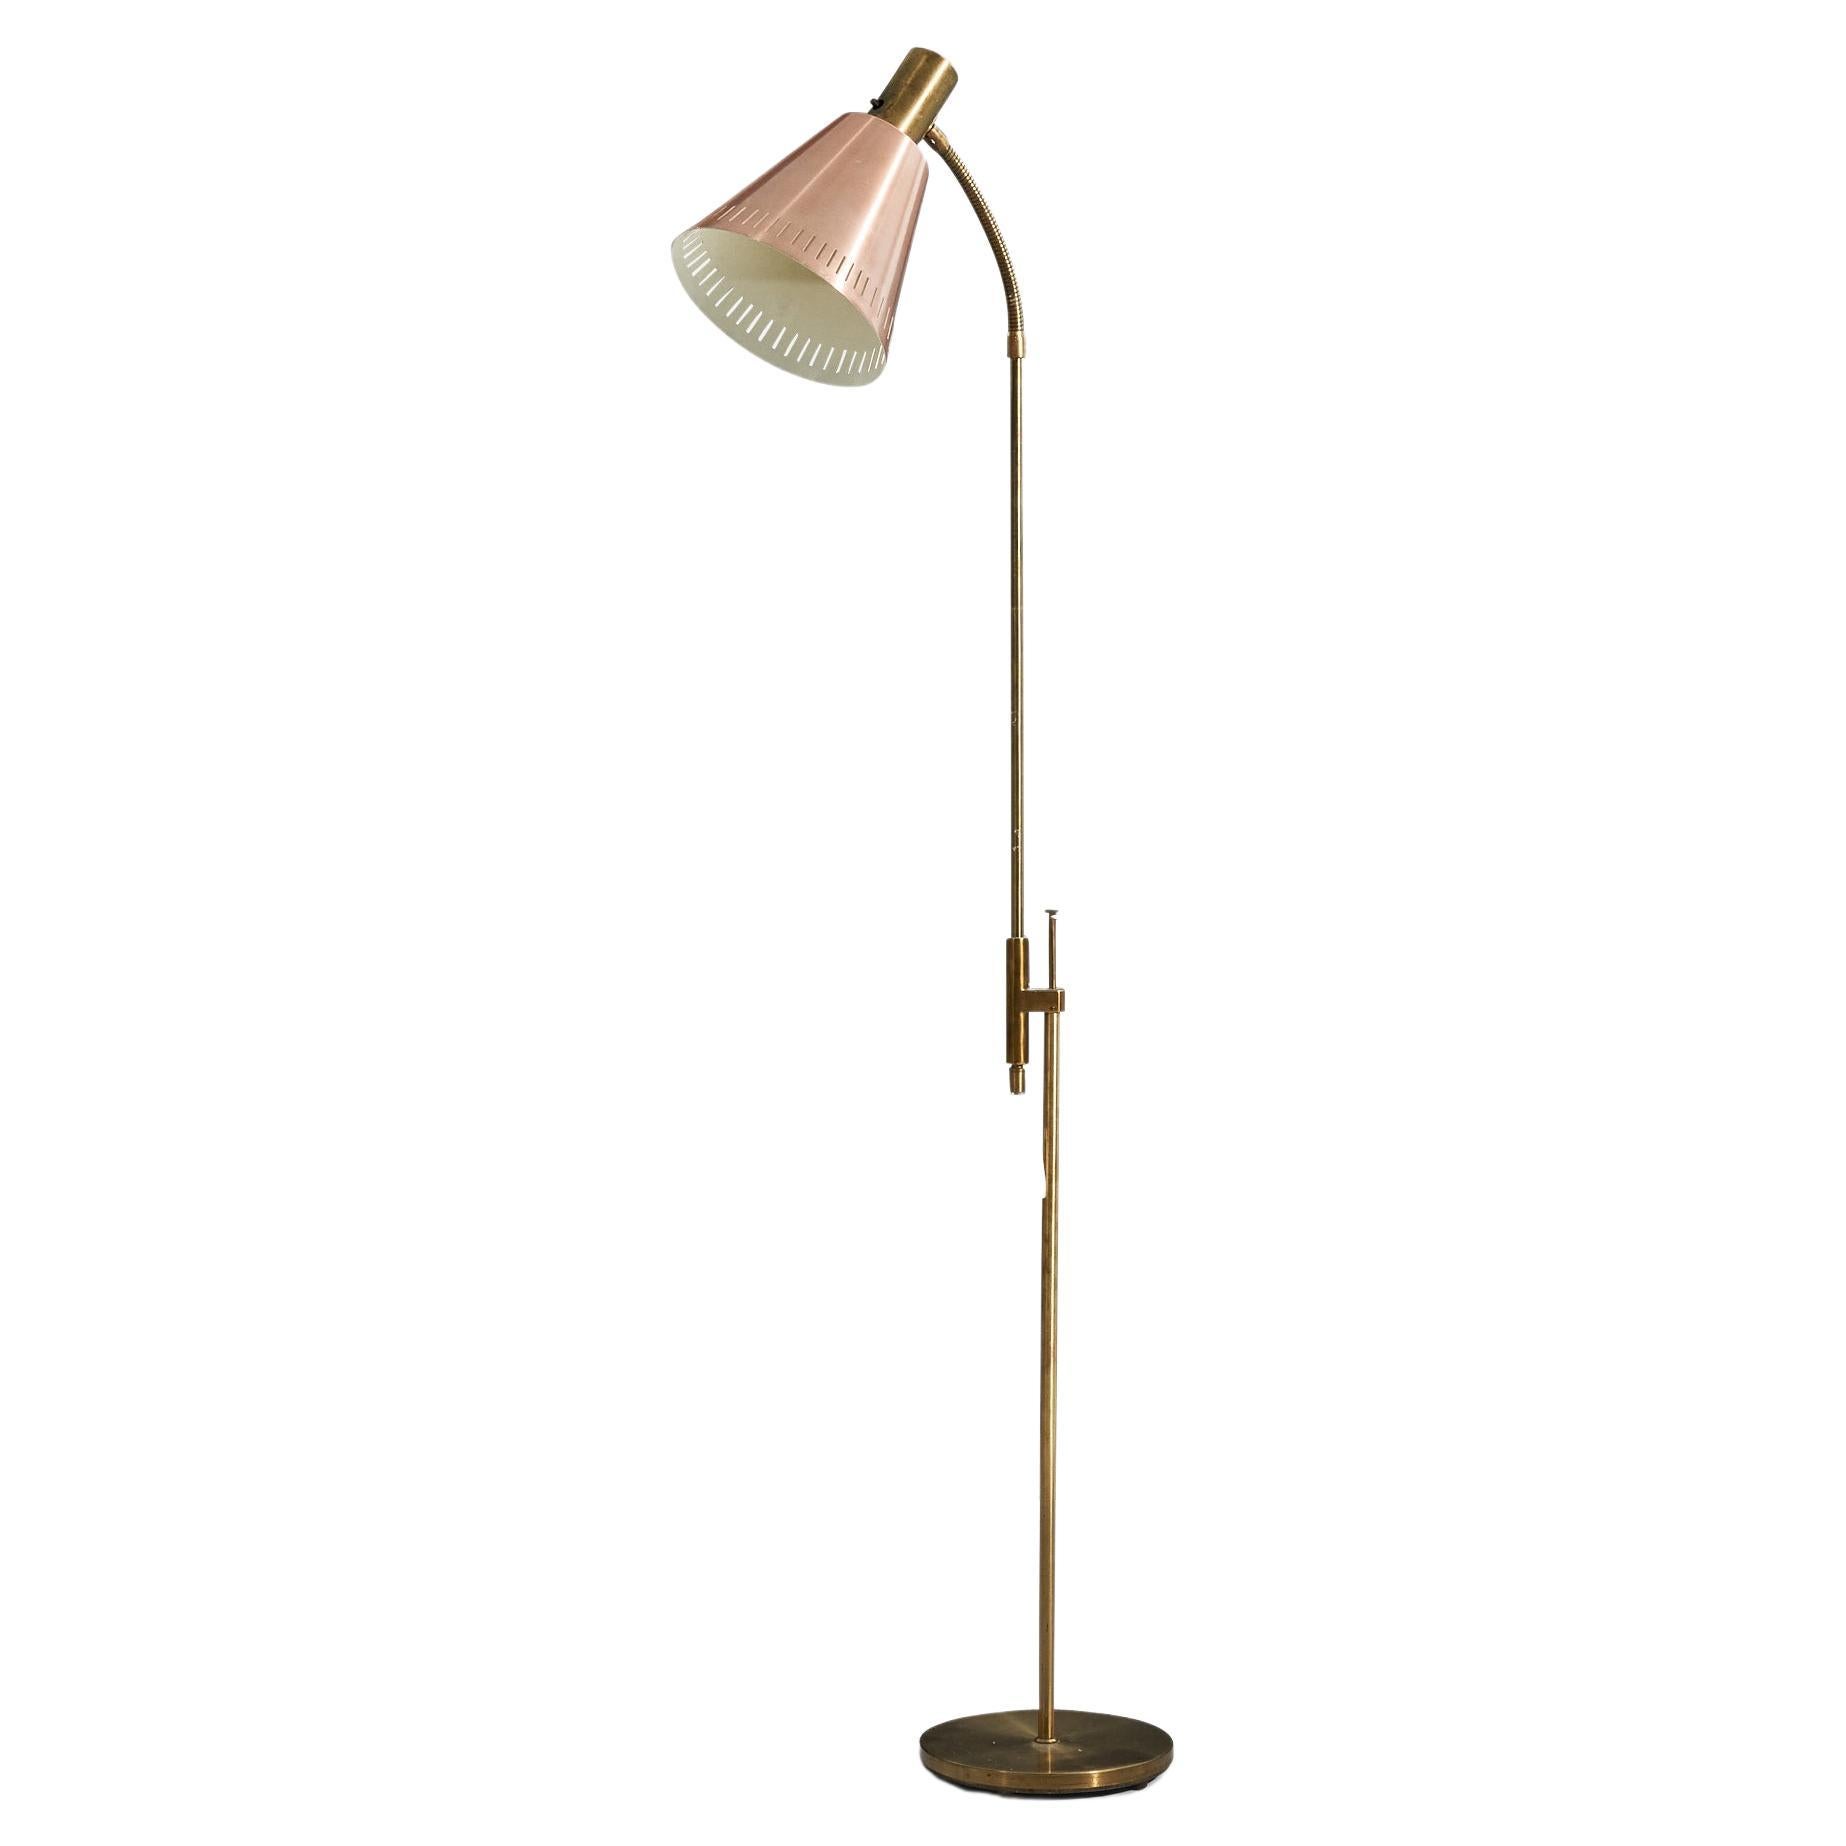 Falkenberg Belysning, Adjustable Floor Lamp, Brass, Sweden, 1950s For Sale